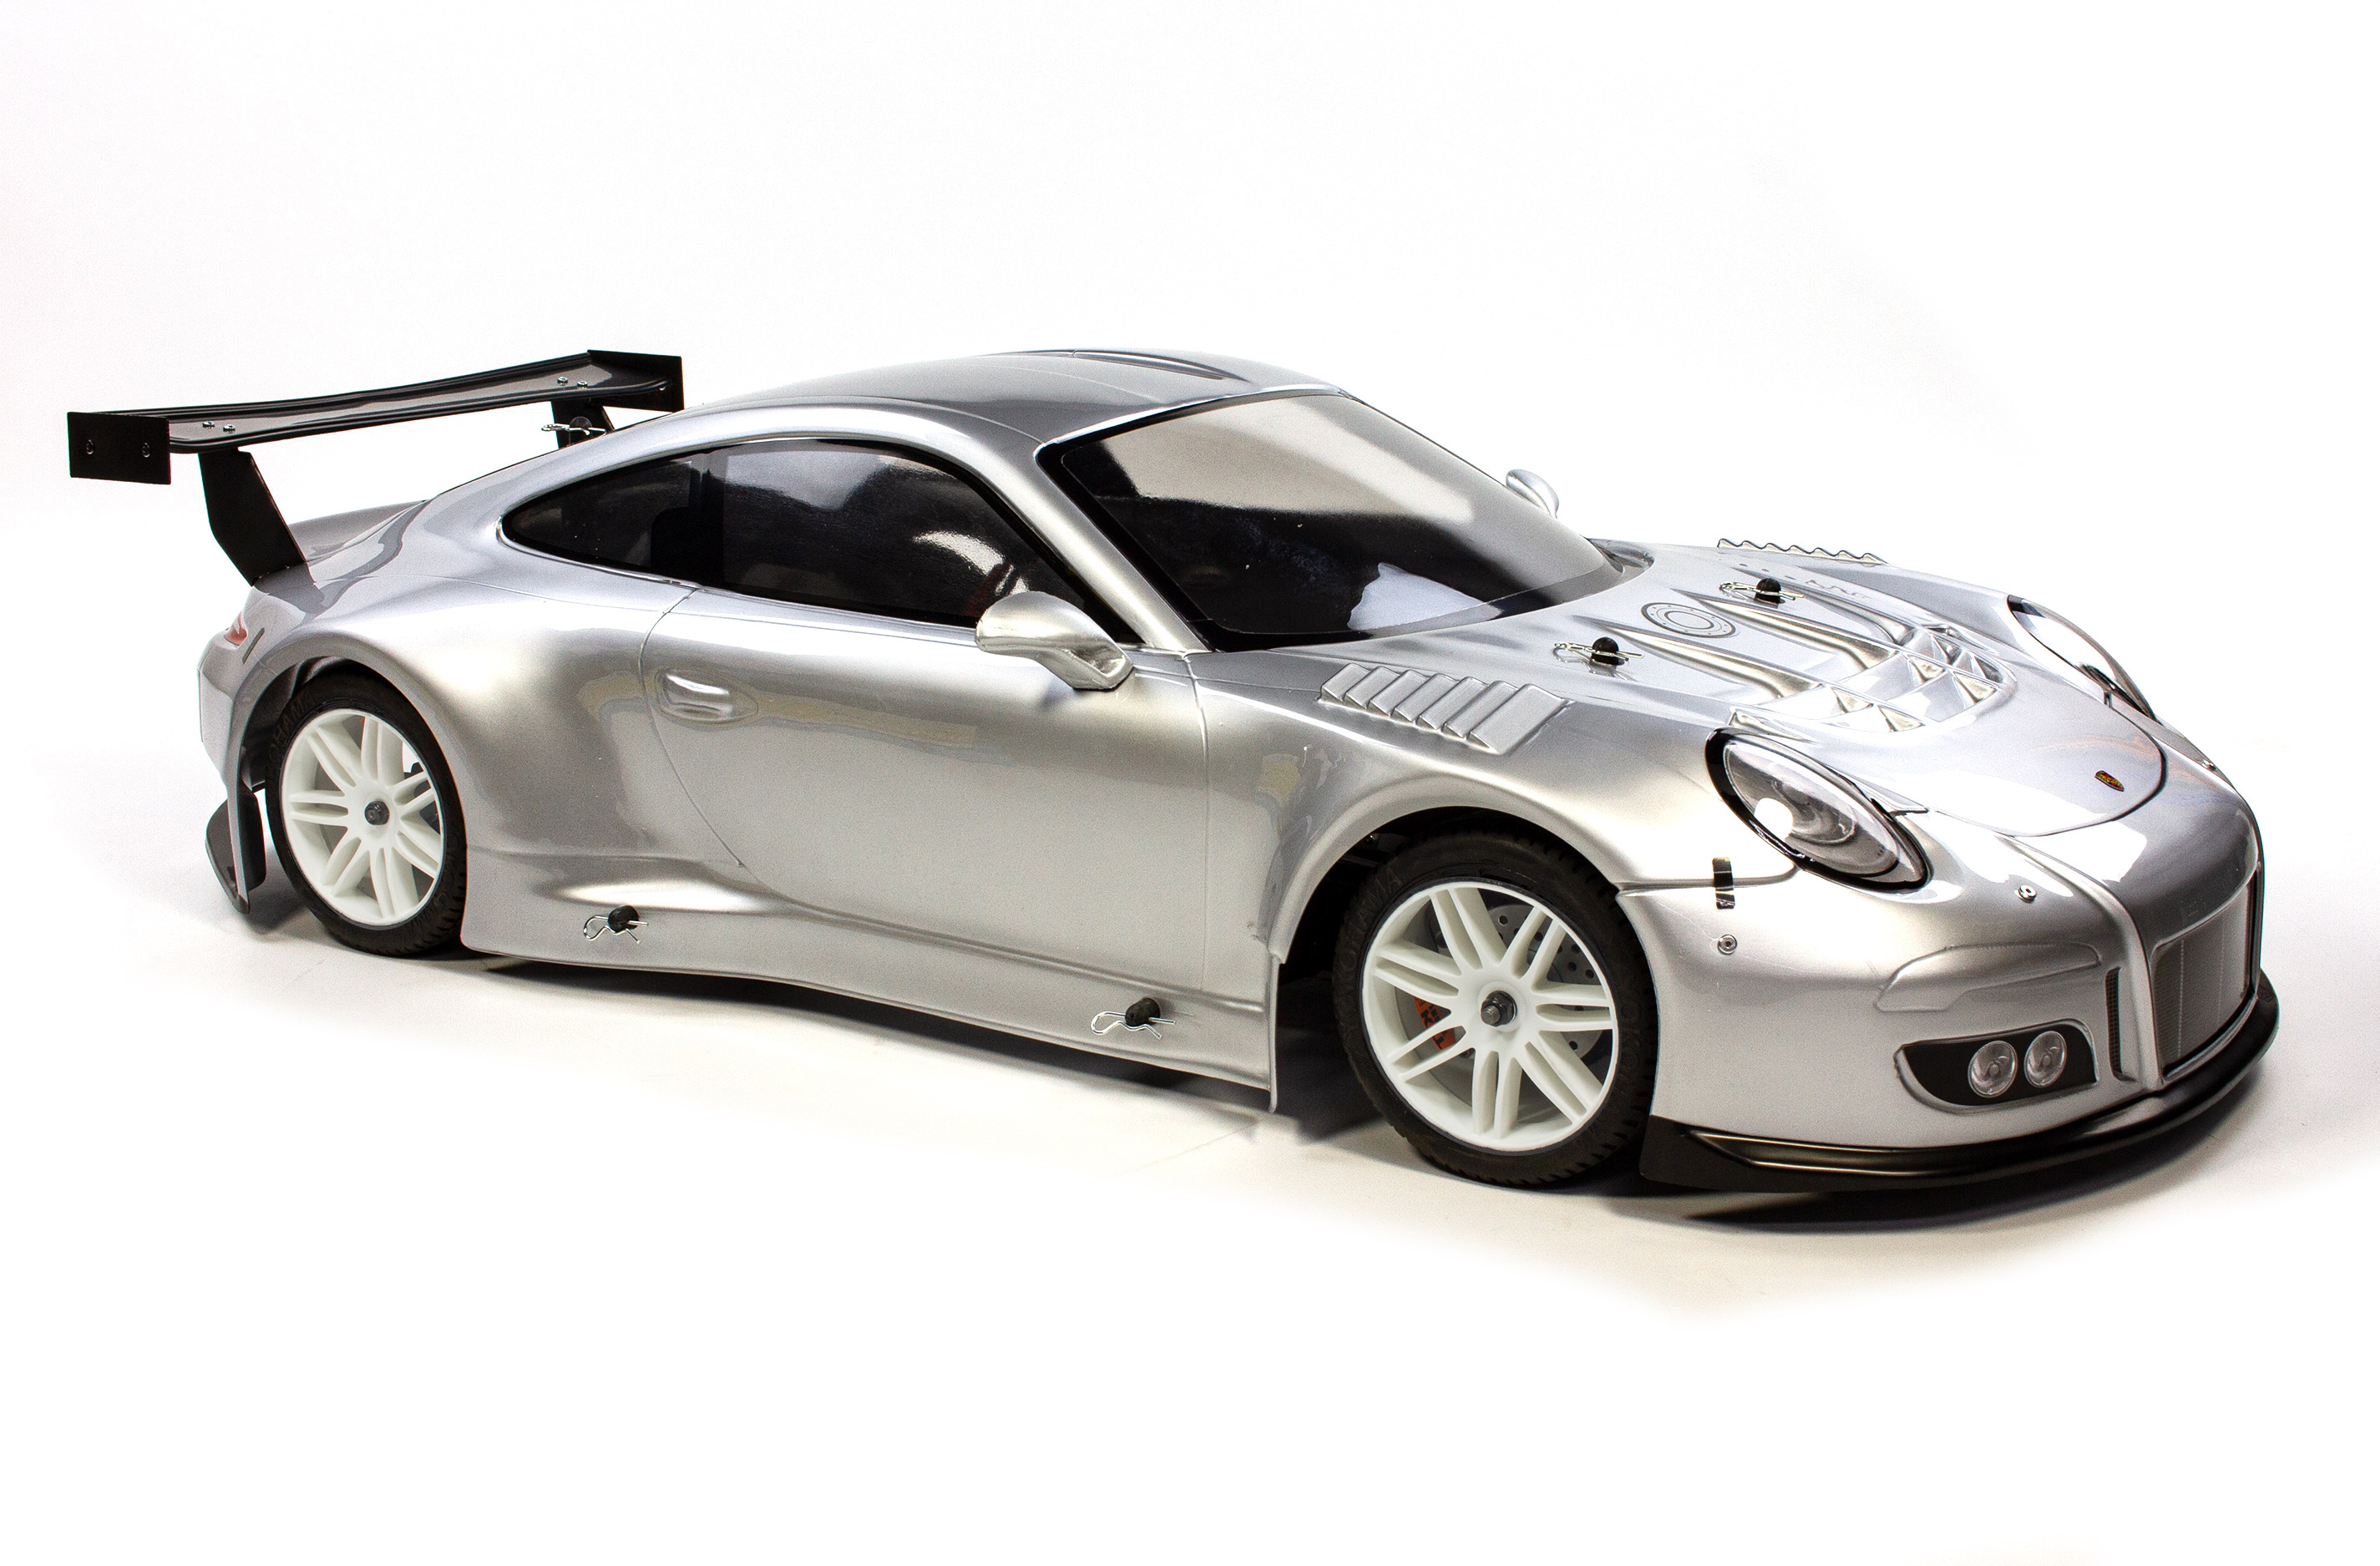 5190 Porsche 911 body shell, Wheelbase 530 mm, clear